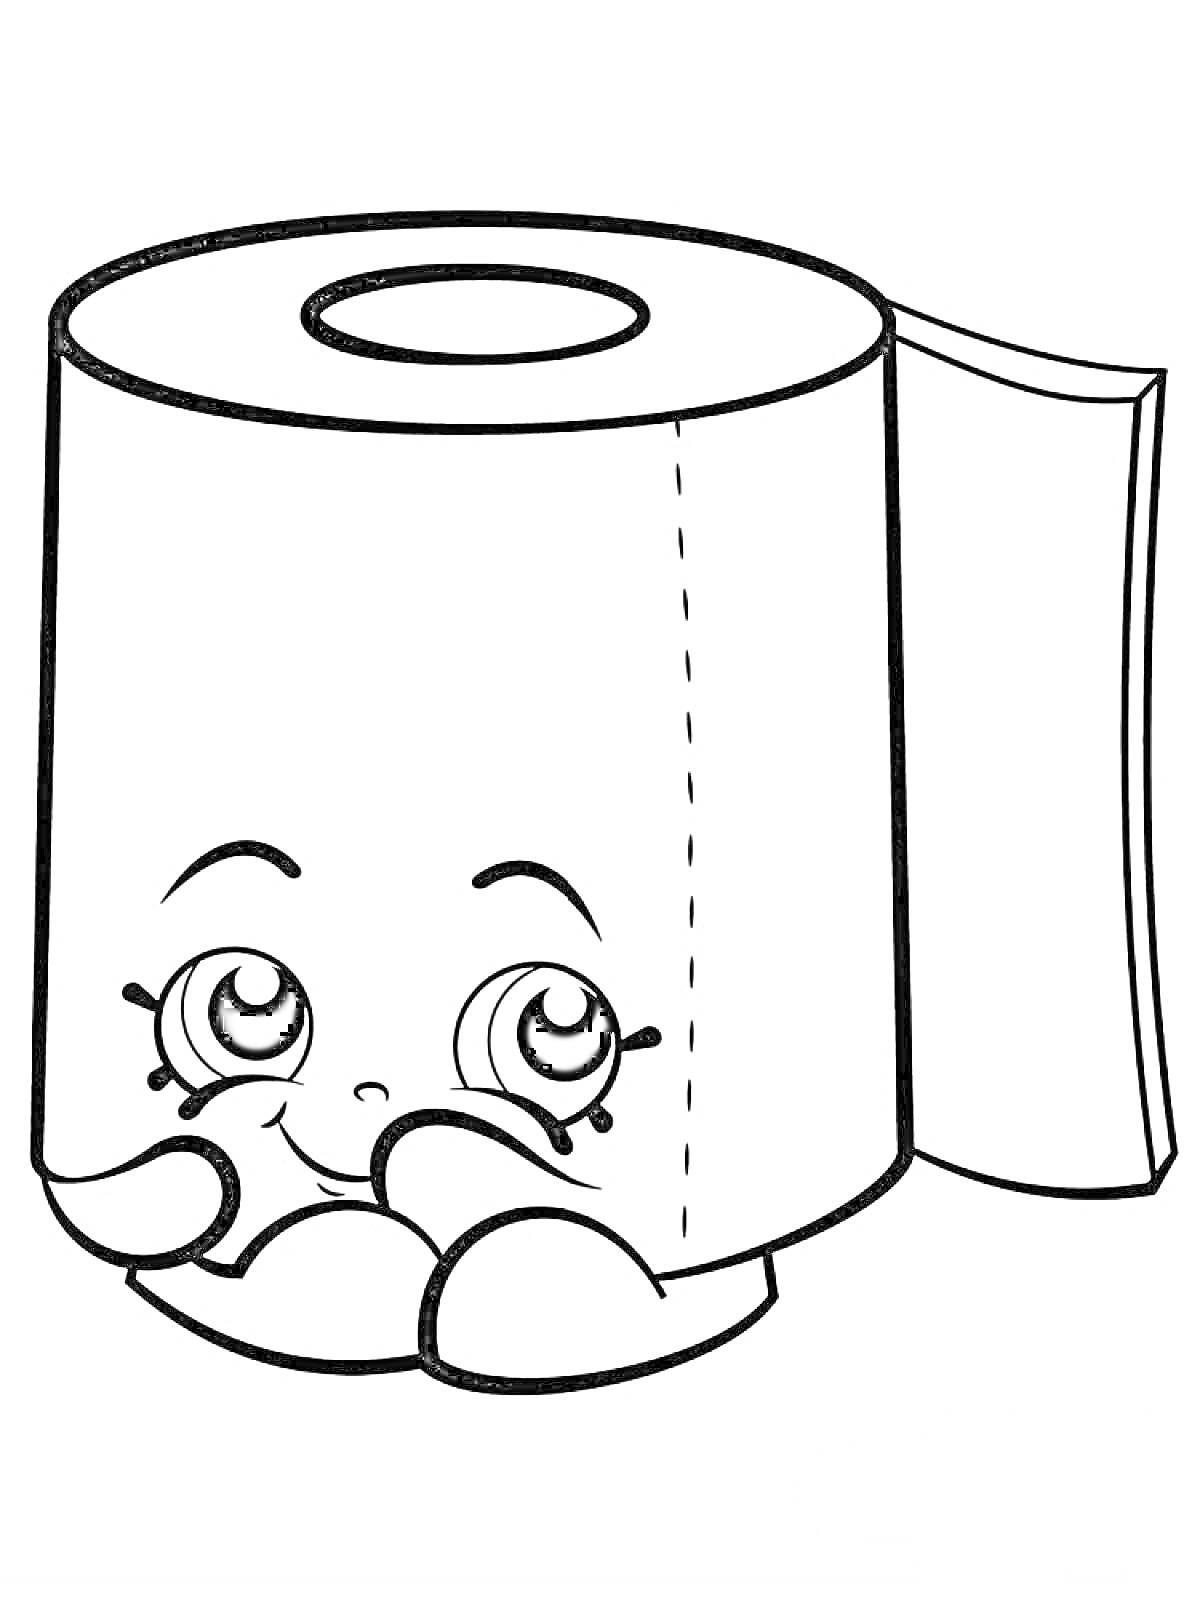 Раскраска Рулон туалетной бумаги с лицом и руками